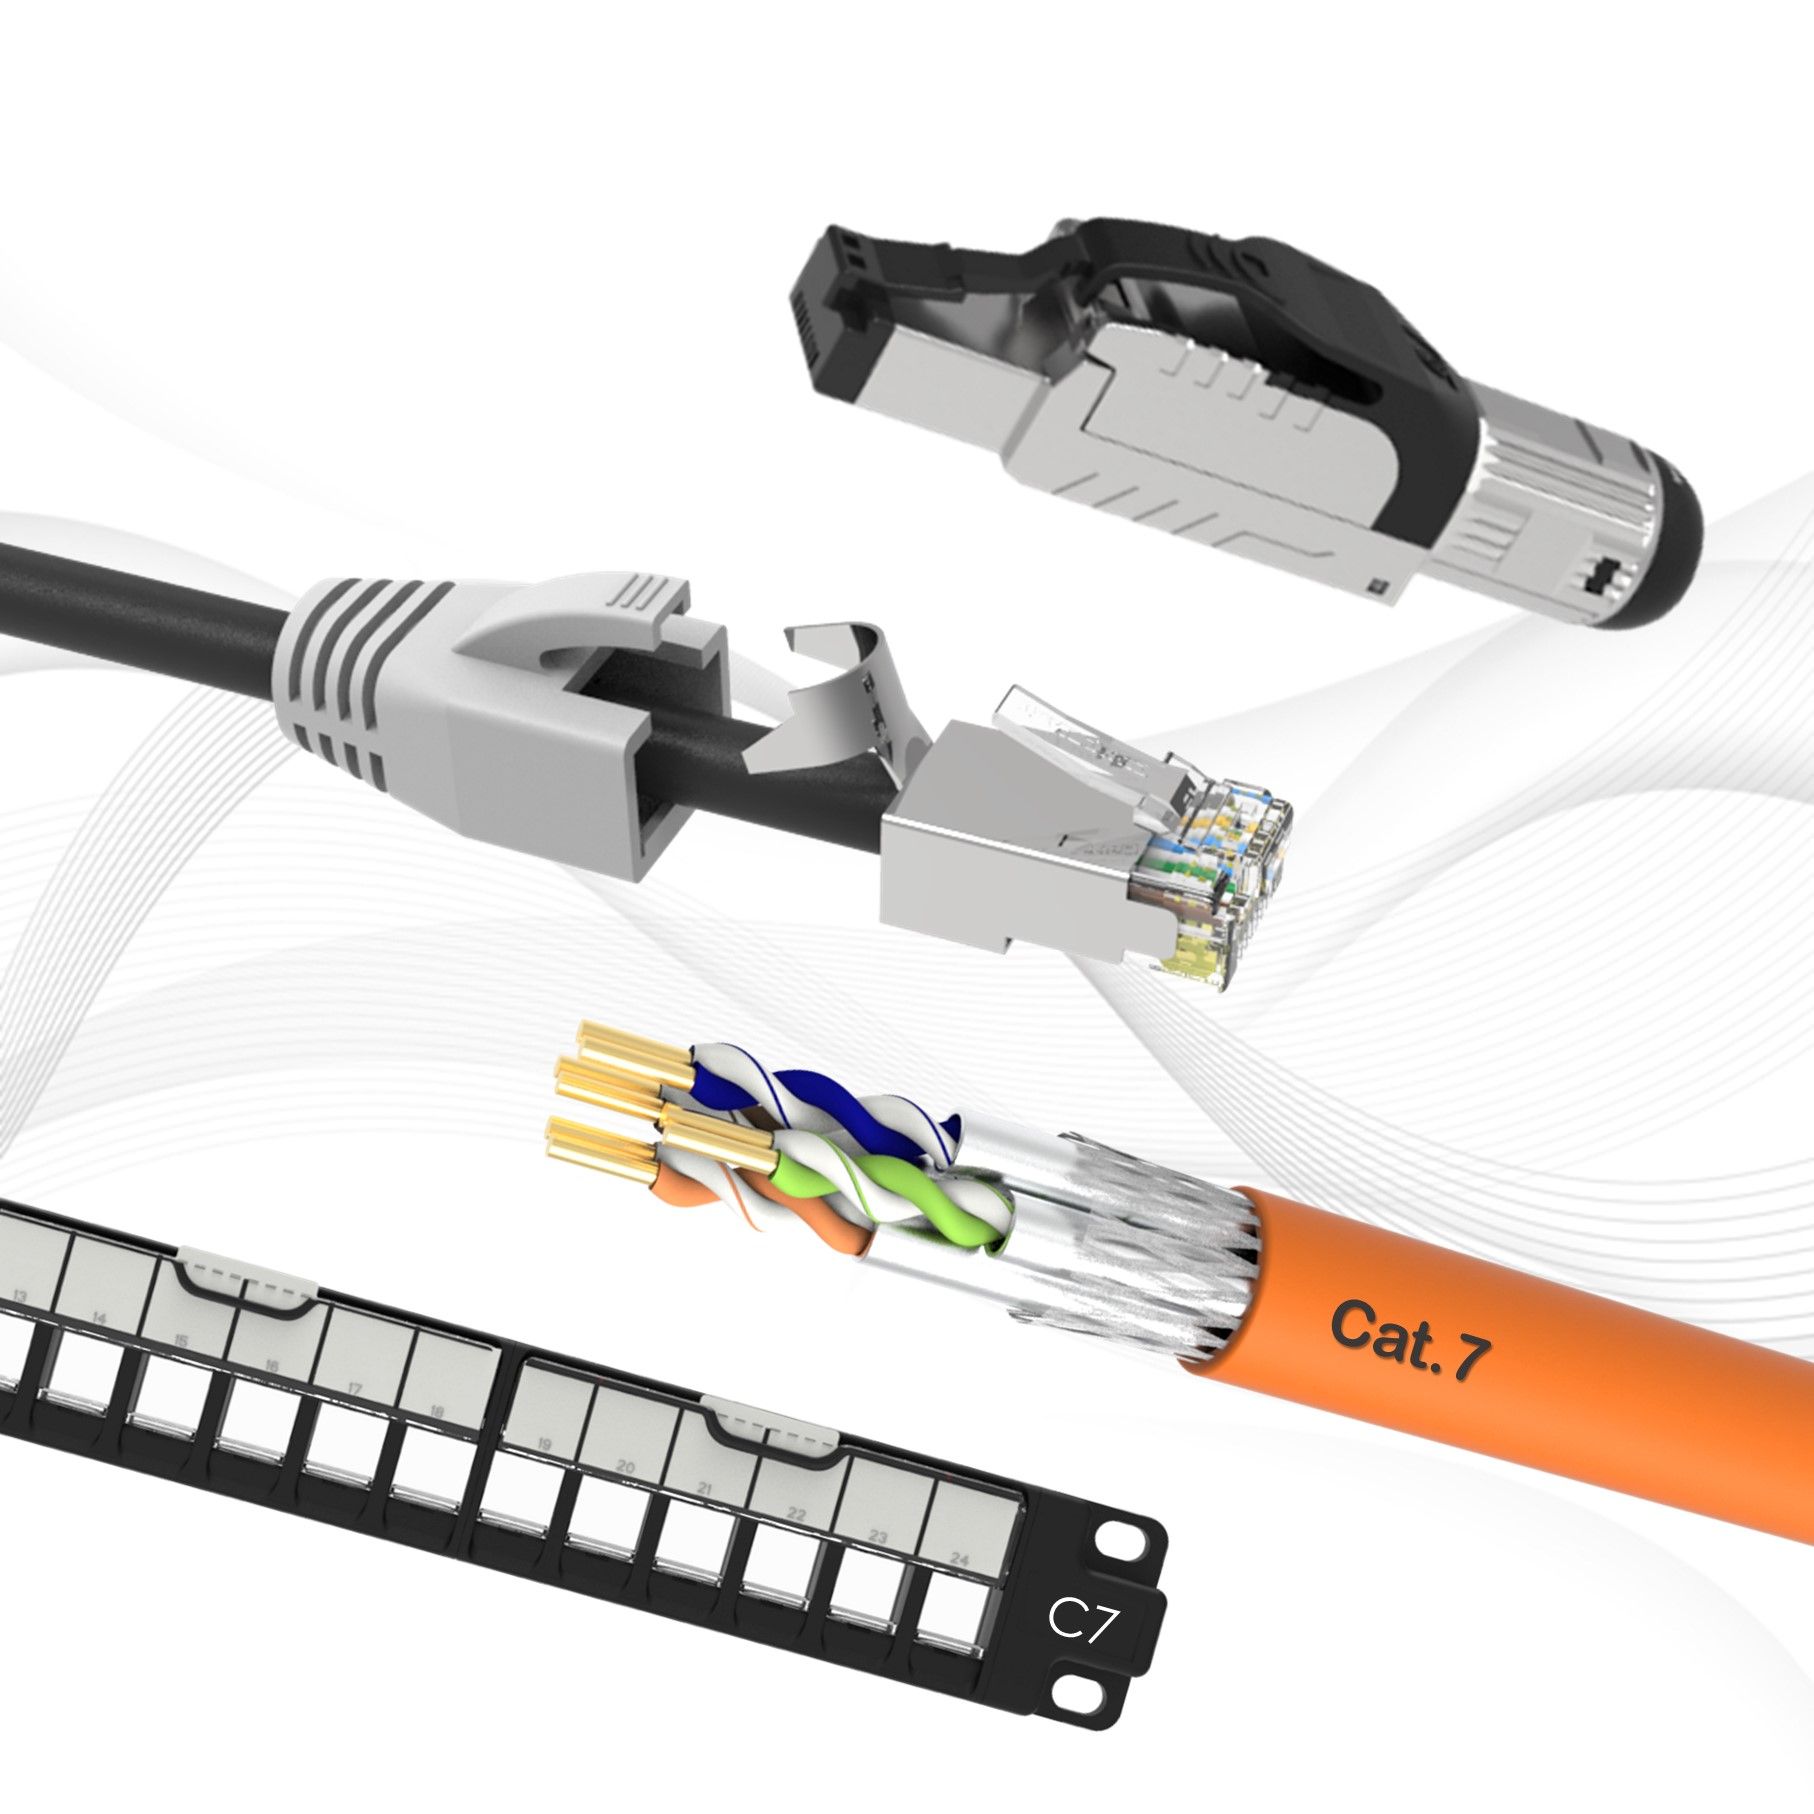 Solusi Kabel Struktural Cat7 10 Gigabit Ethernet Cat7